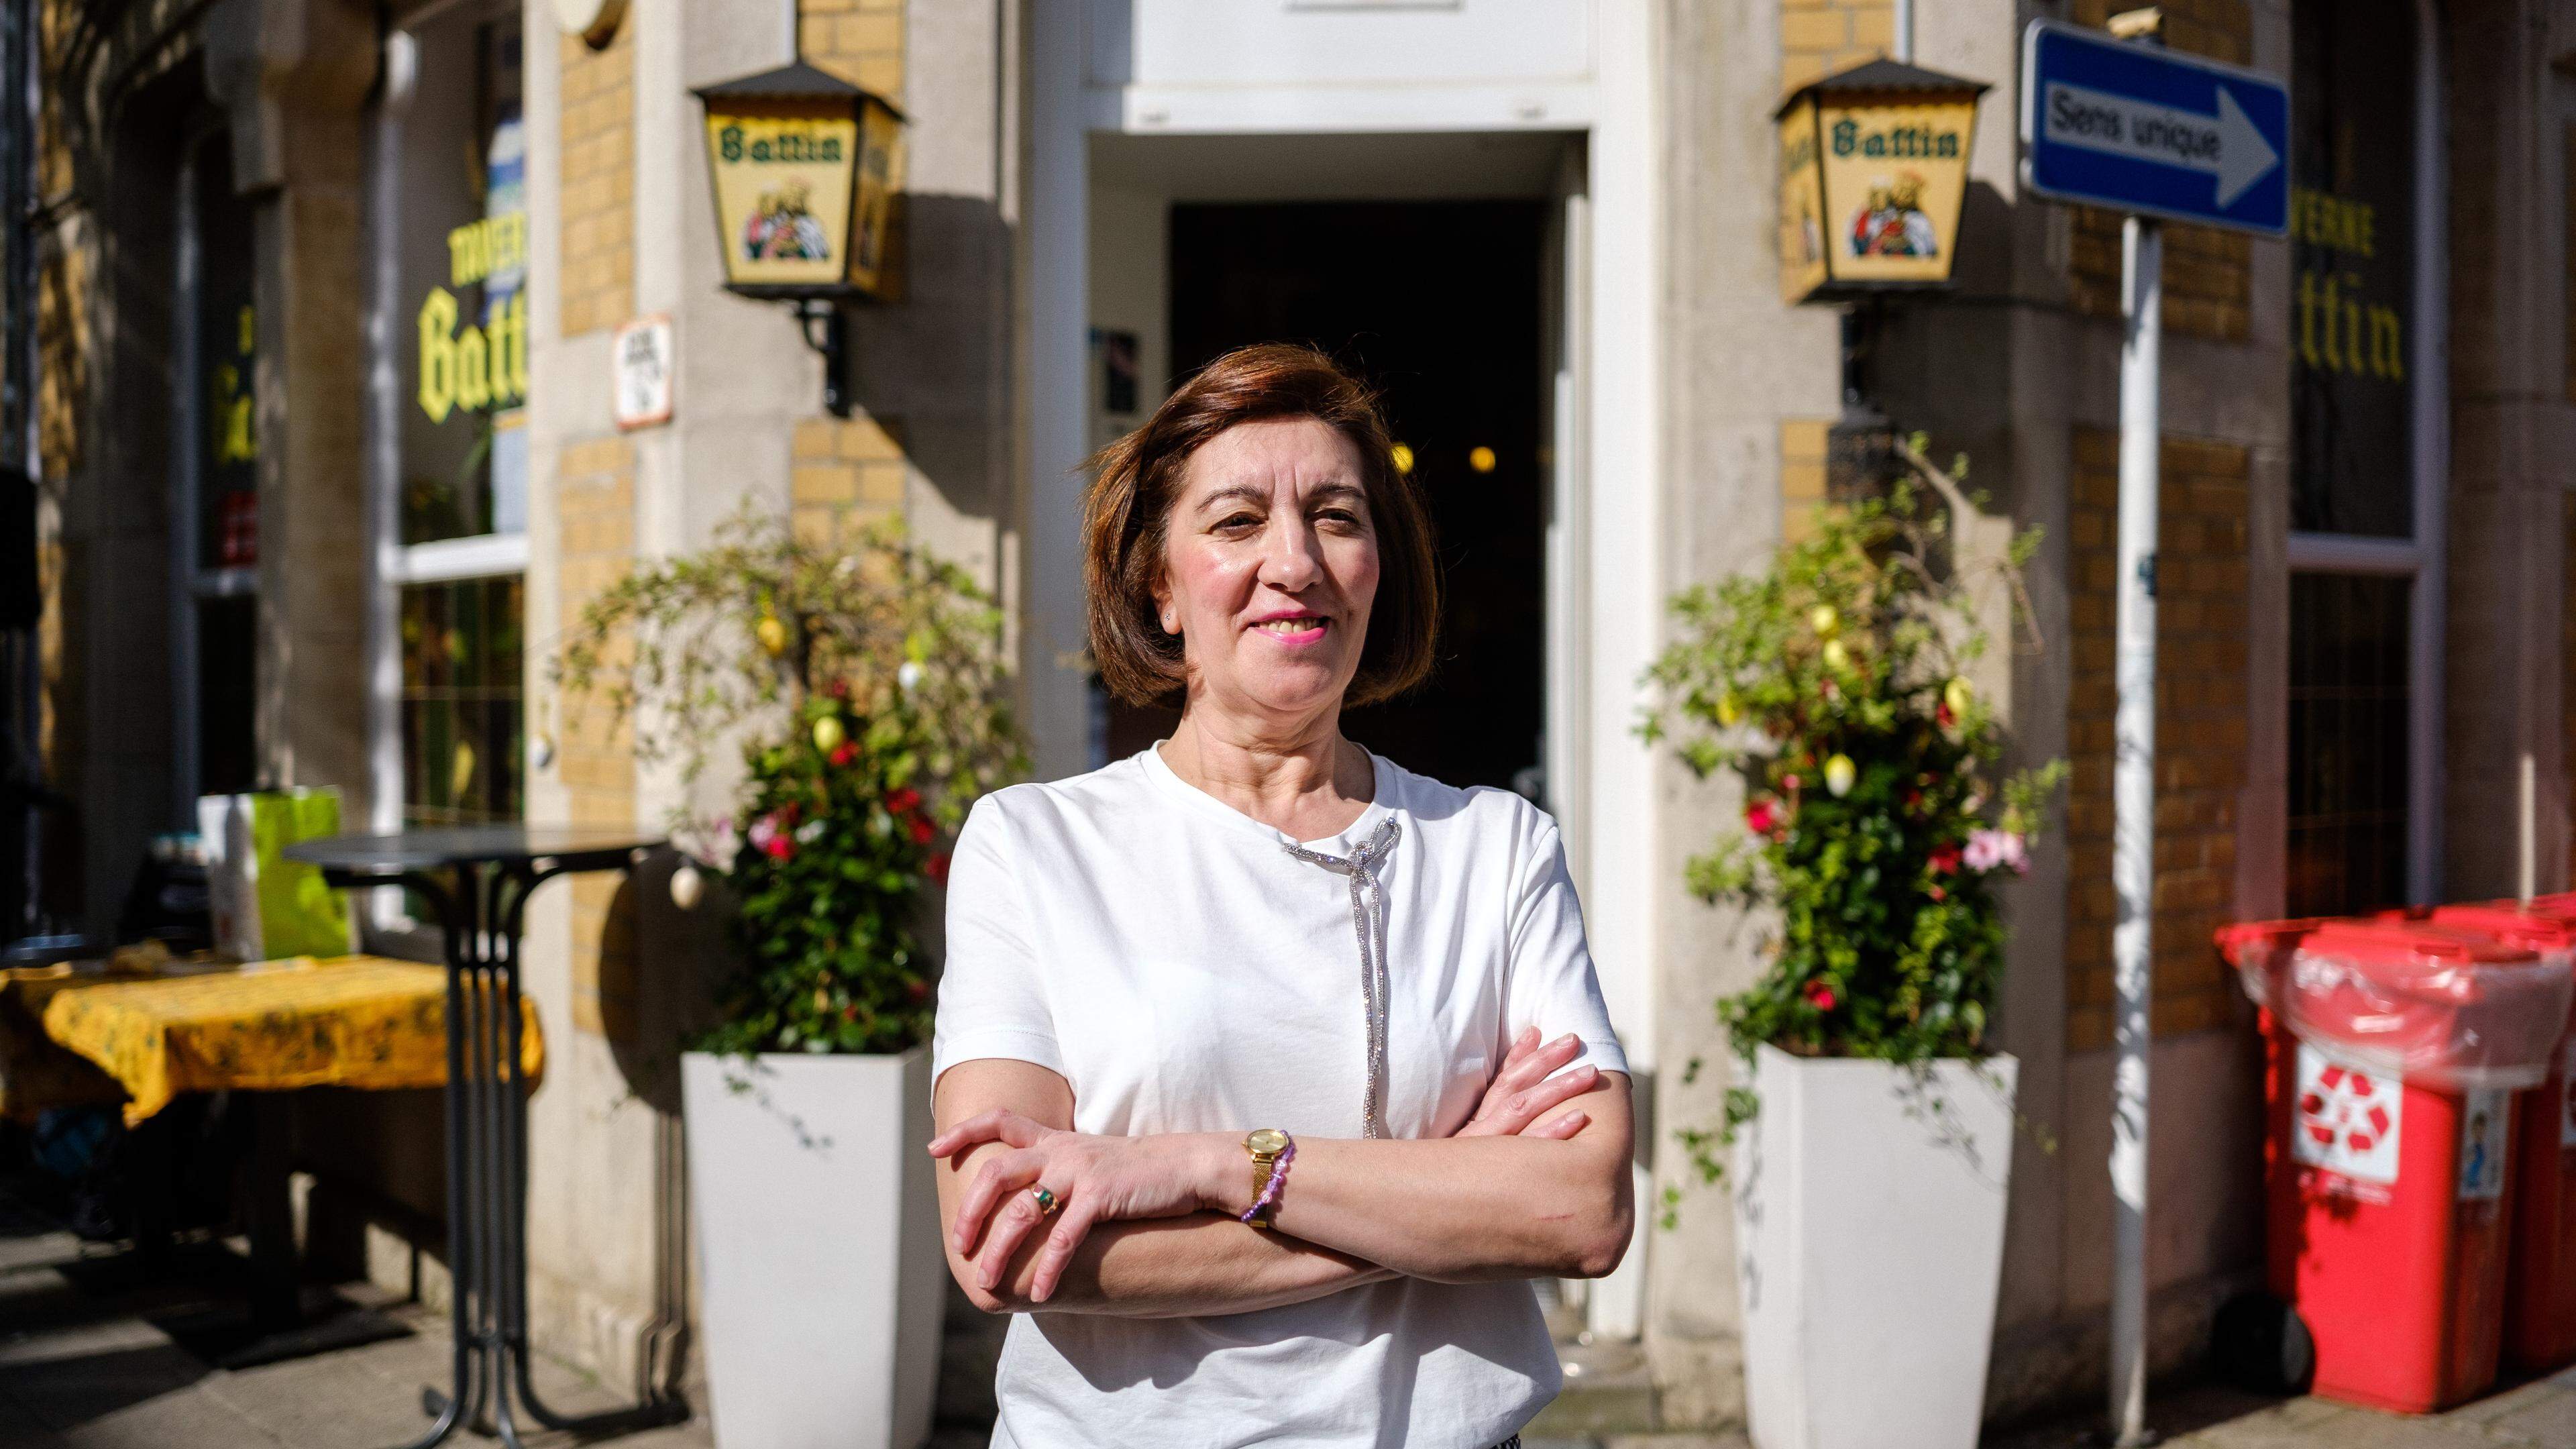 Anita, 60 anos, foi a gerente do café Taverne Battin desde 1989.